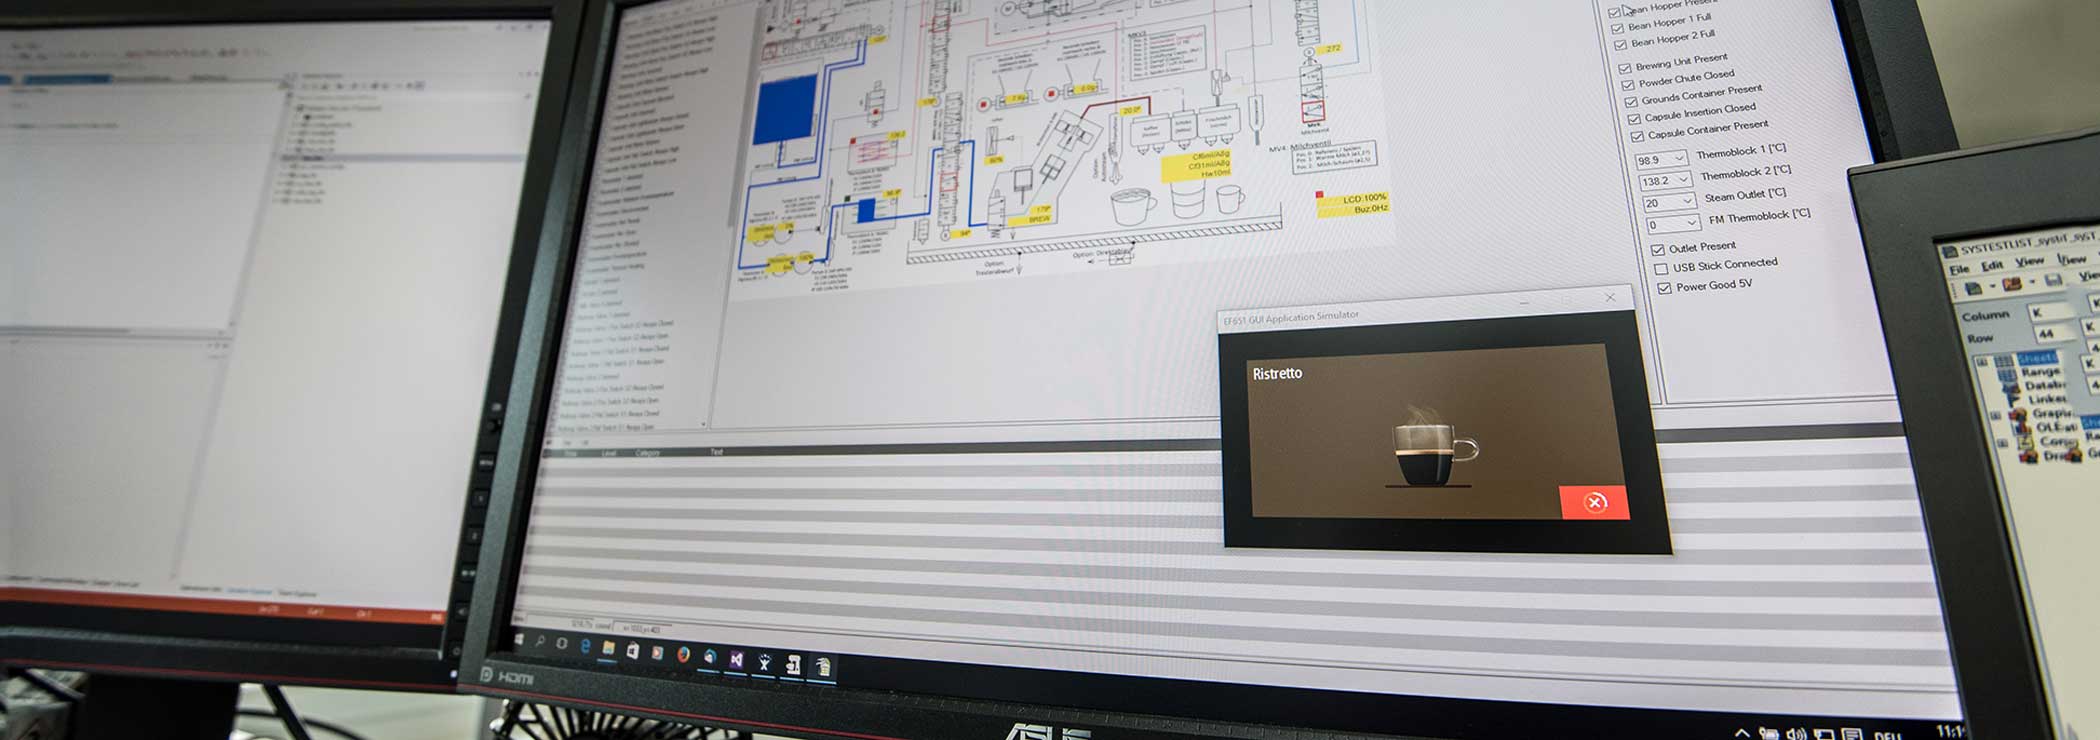 Software-Simulation einer Kaffeemaschine auf dem PC Bildschirm